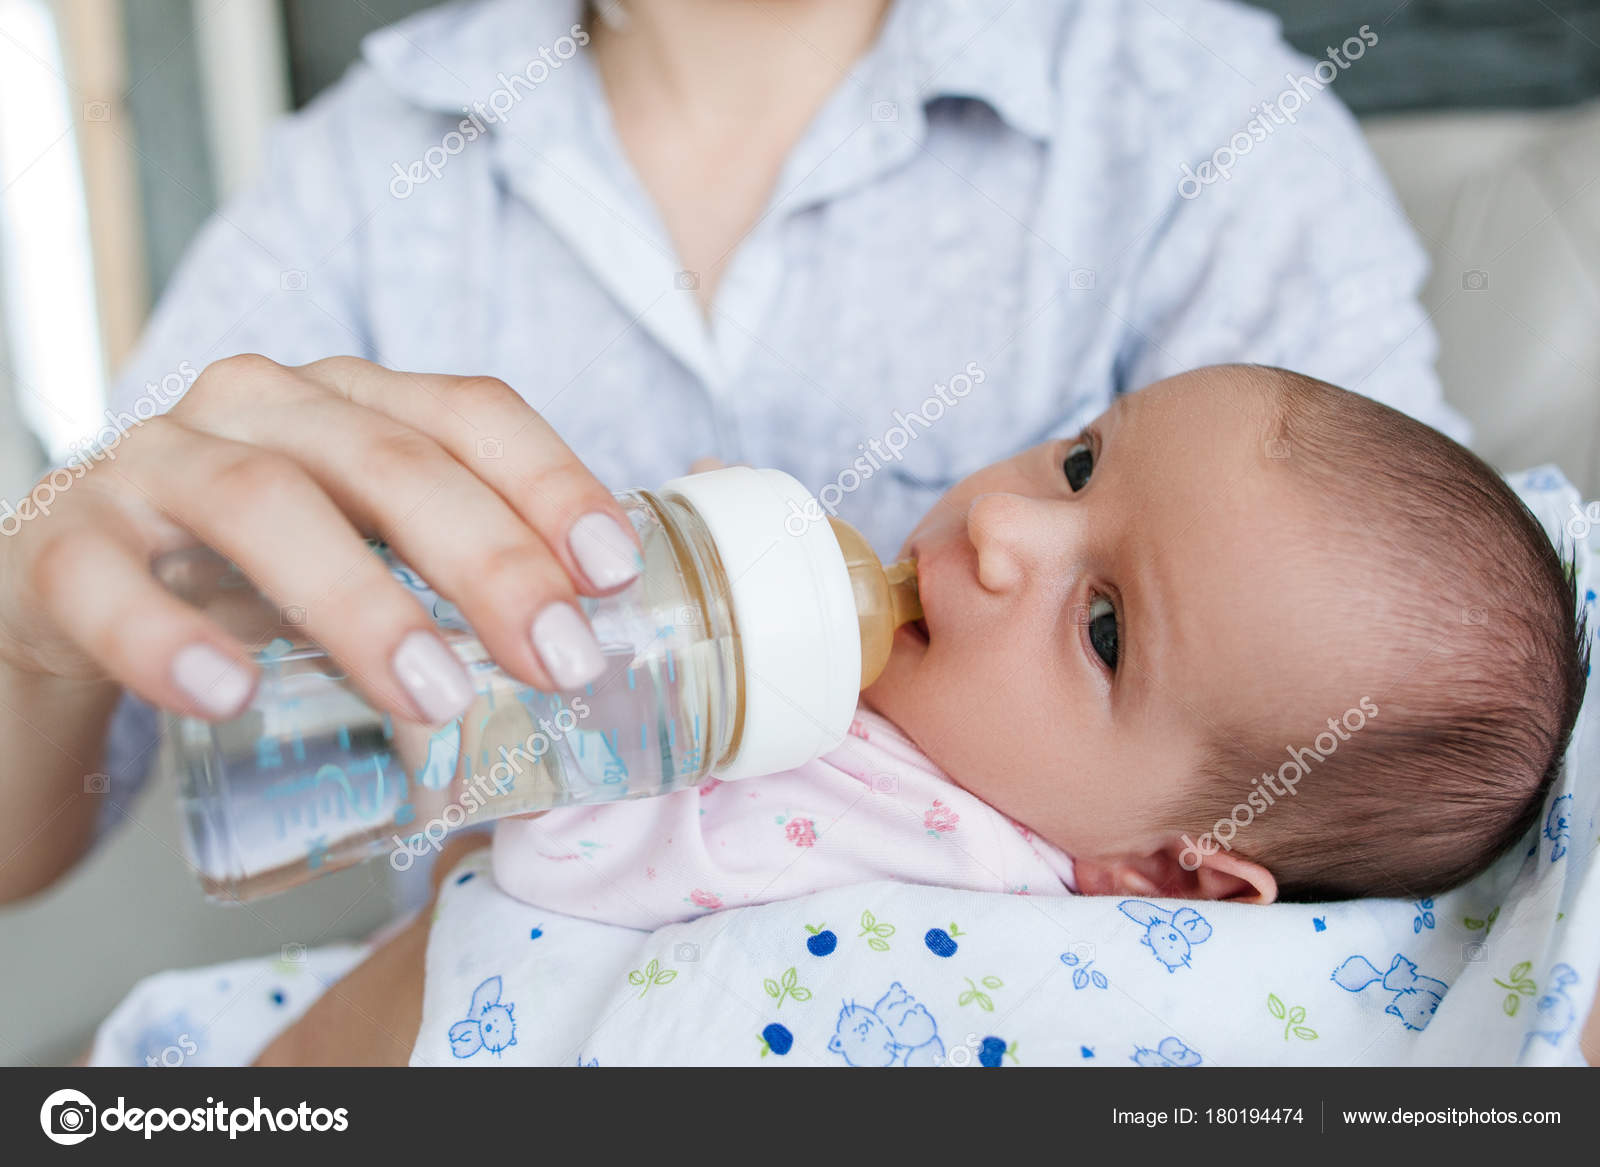 Можно давать воду грудному ребенку. Кормление из бутылочки водой грудничка. Поить водой новорожденного ребенка при грудном вскармливании. Допаивать грудничка водой. Грудничок в воде.